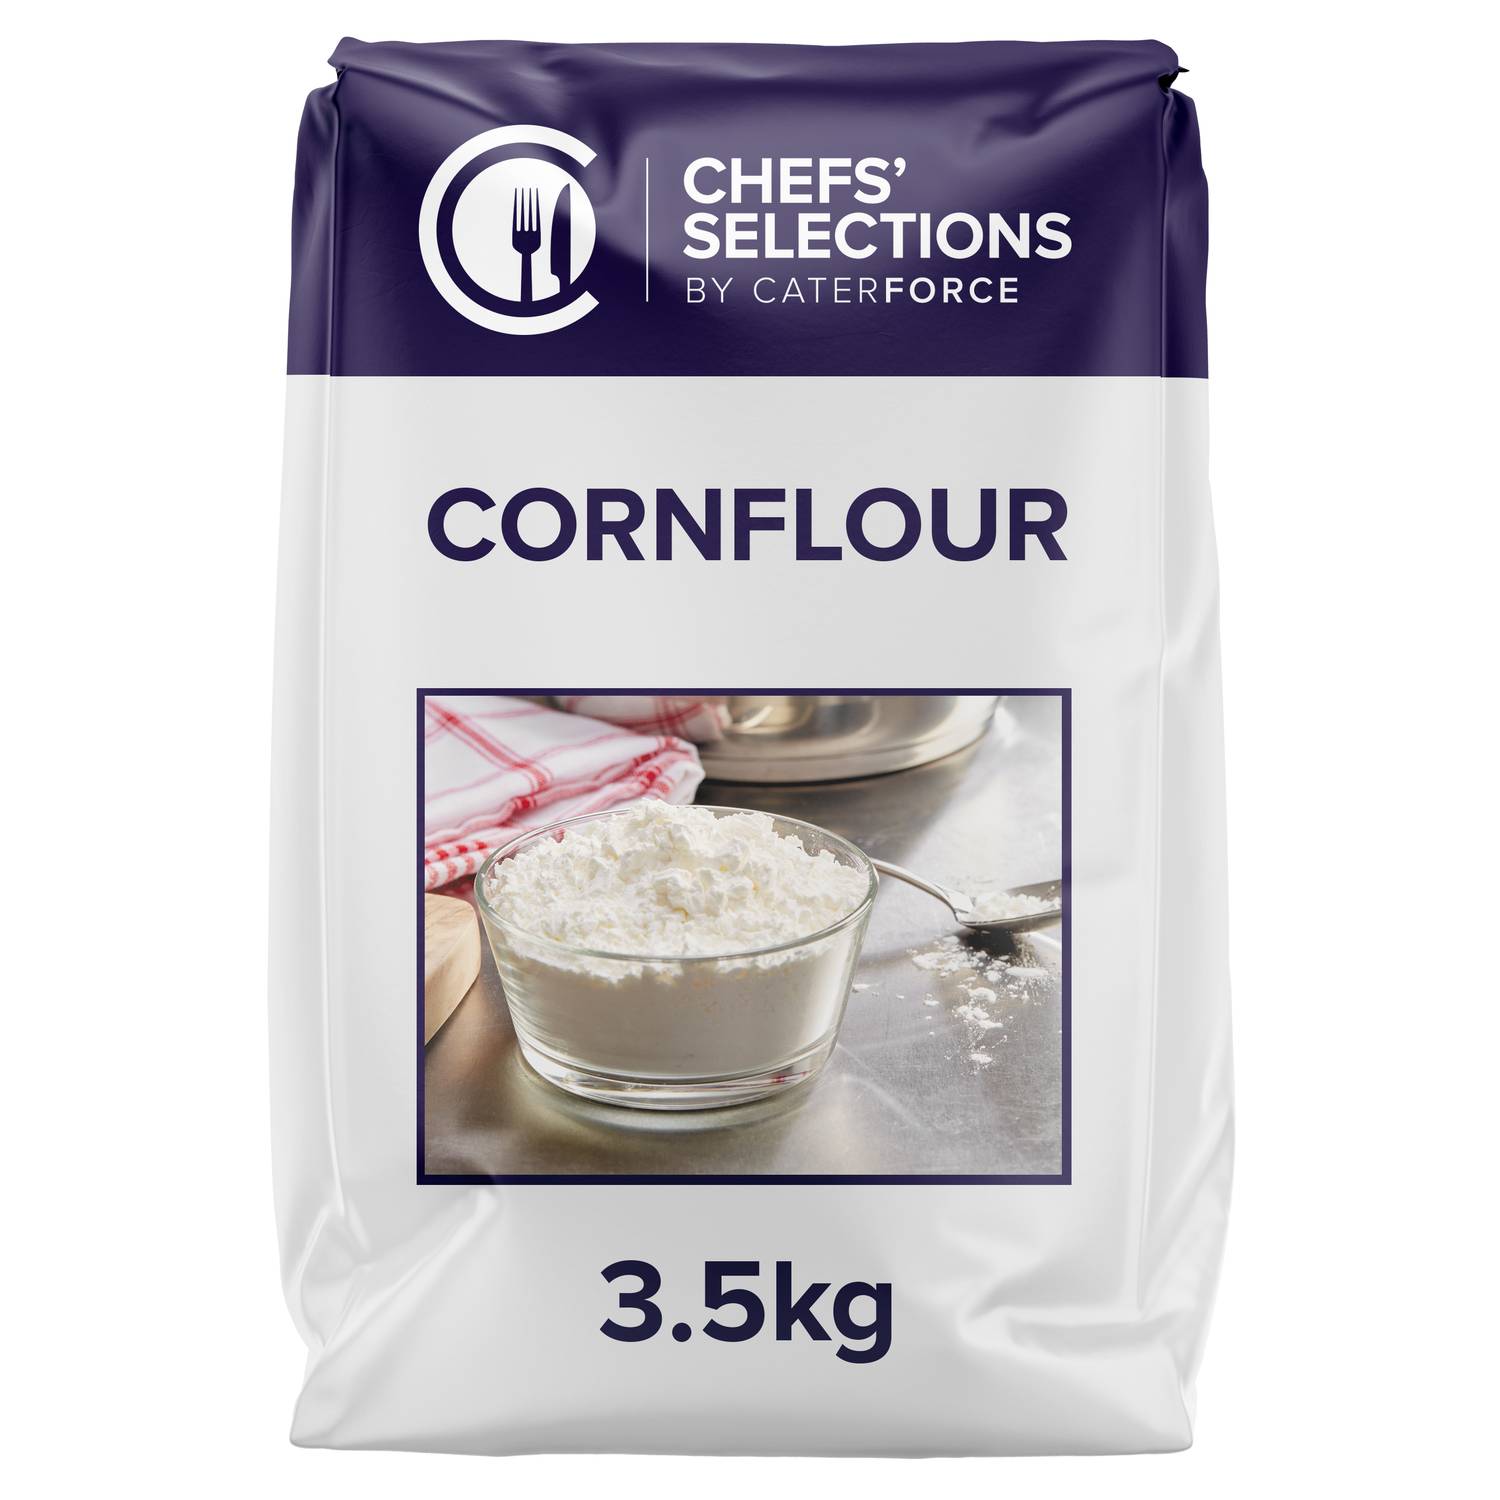 Chefs’ Selections Cornflour (4 x 3.5kg)